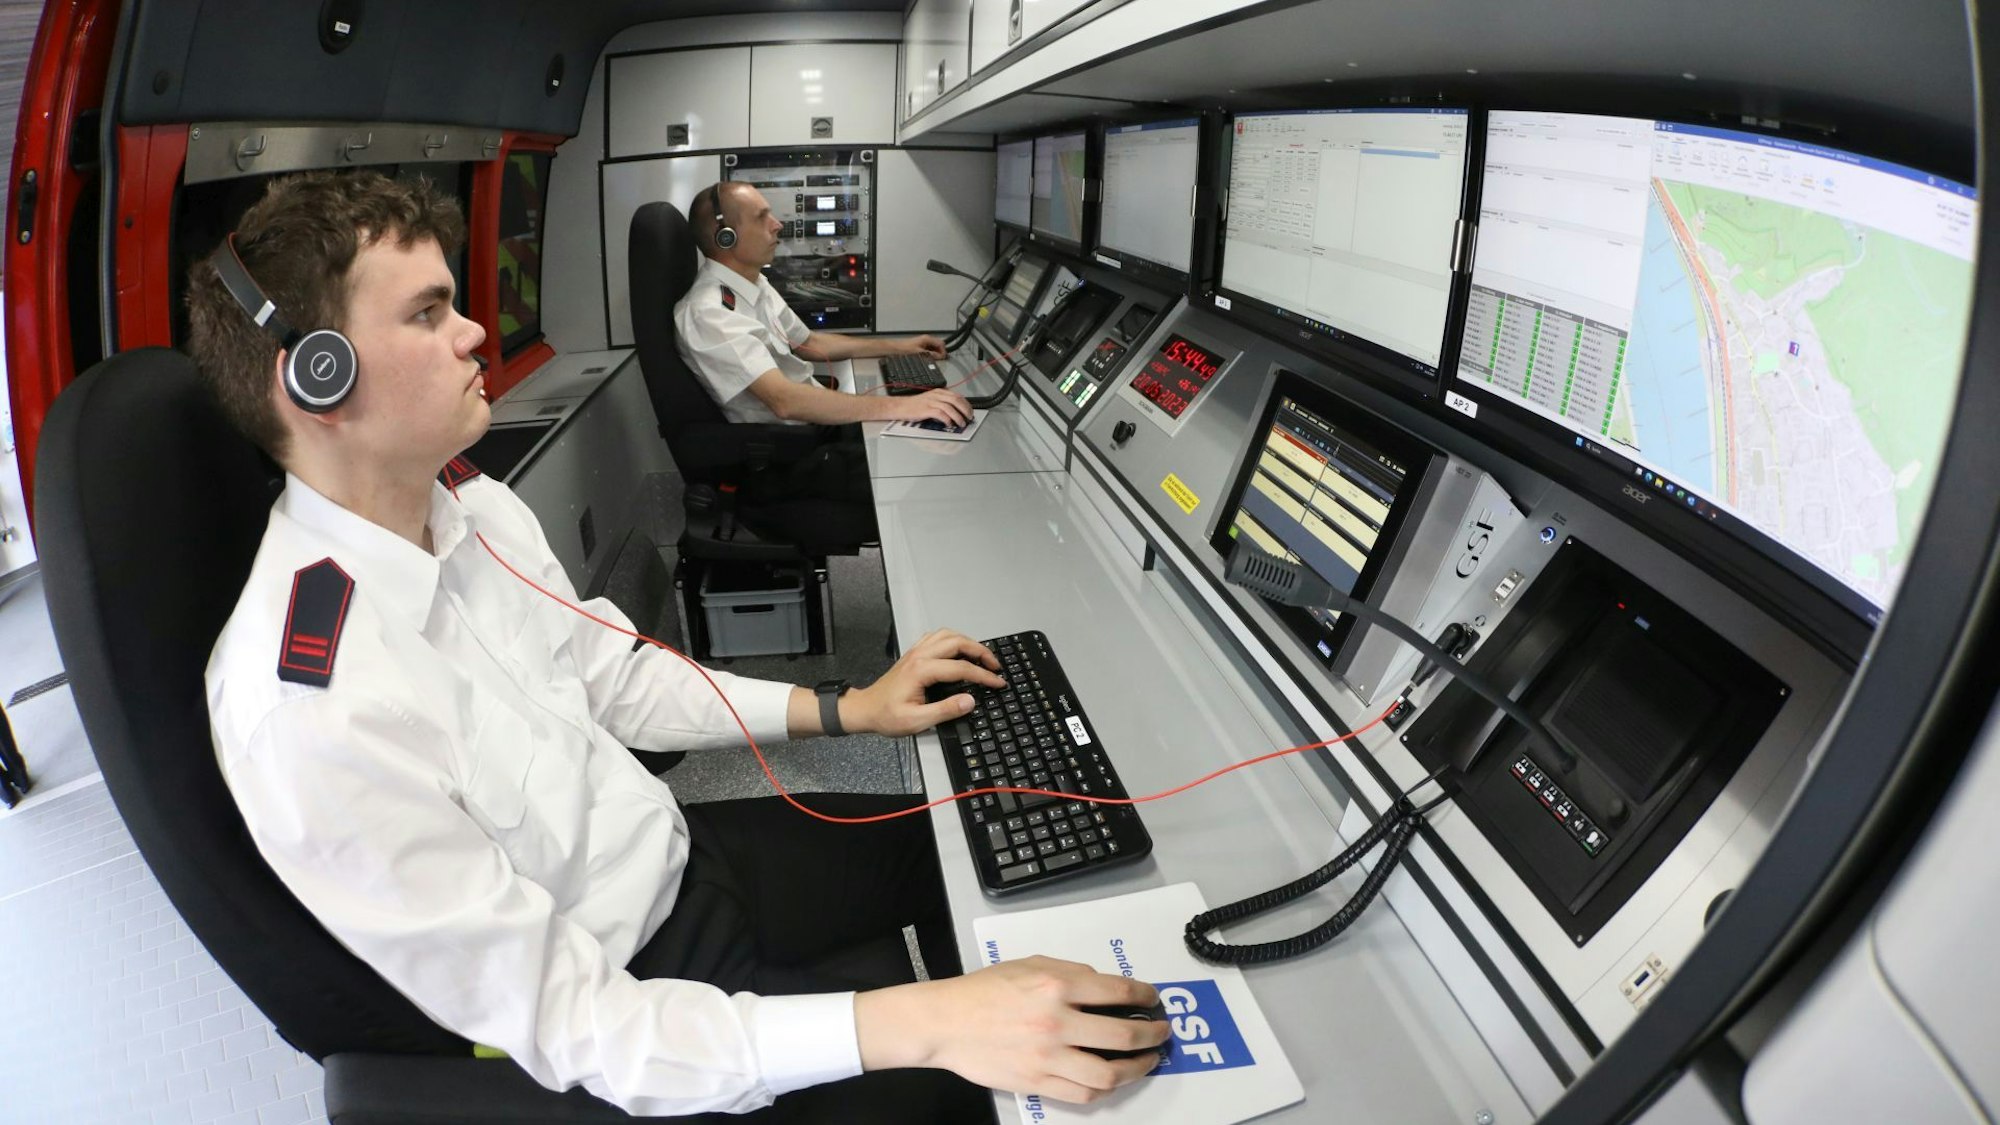 Zwei Männer sitzen vor Computermonitoren im Einsatzleitwagen der Feuerwehr und bedienen Maus und Tastatur. Beide tragen Headsets.